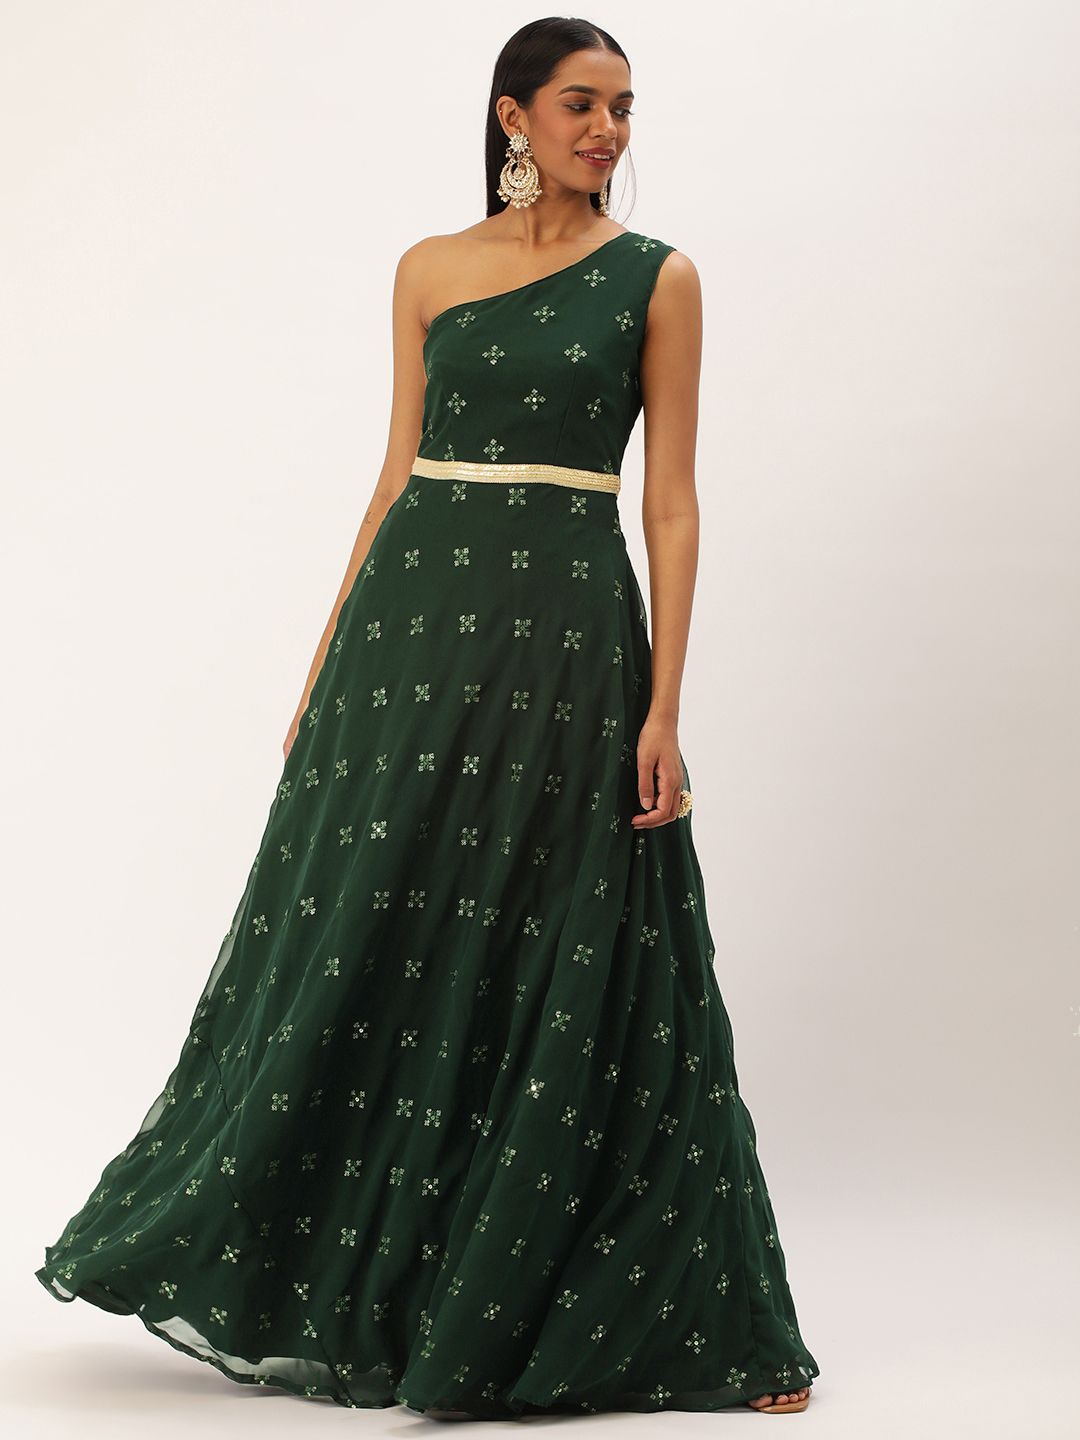 Ethnovog Ethnic Embellished One Shoulder Gown Price in India